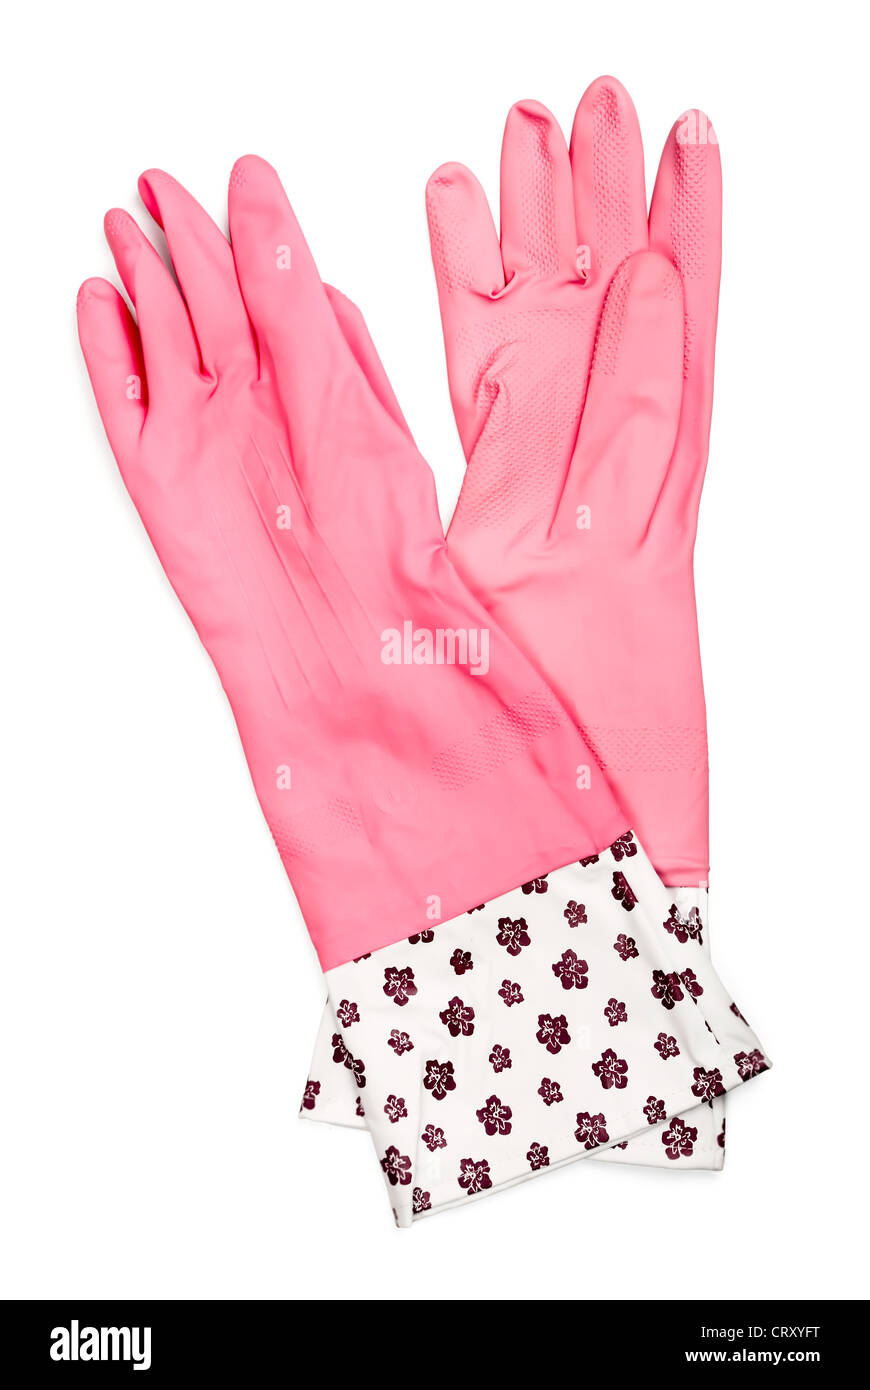 Par de guantes de goma rosa aislado en blanco Foto de stock